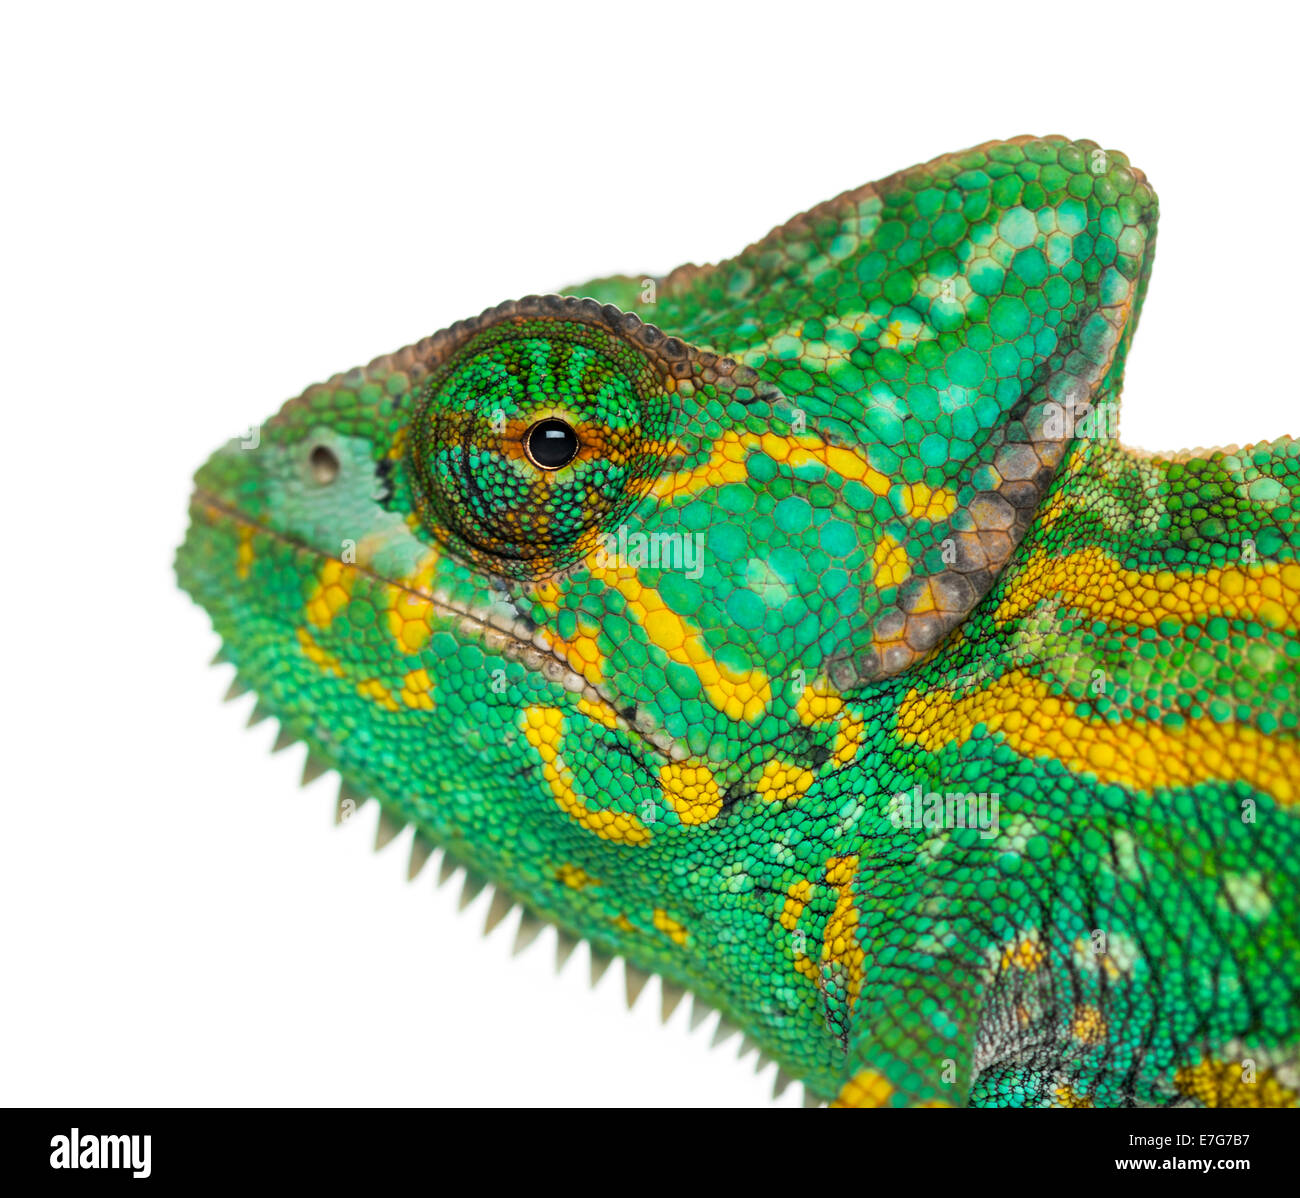 Headshot of a Yemen chameleon, Chamaeleo calyptratus, against white background Stock Photo